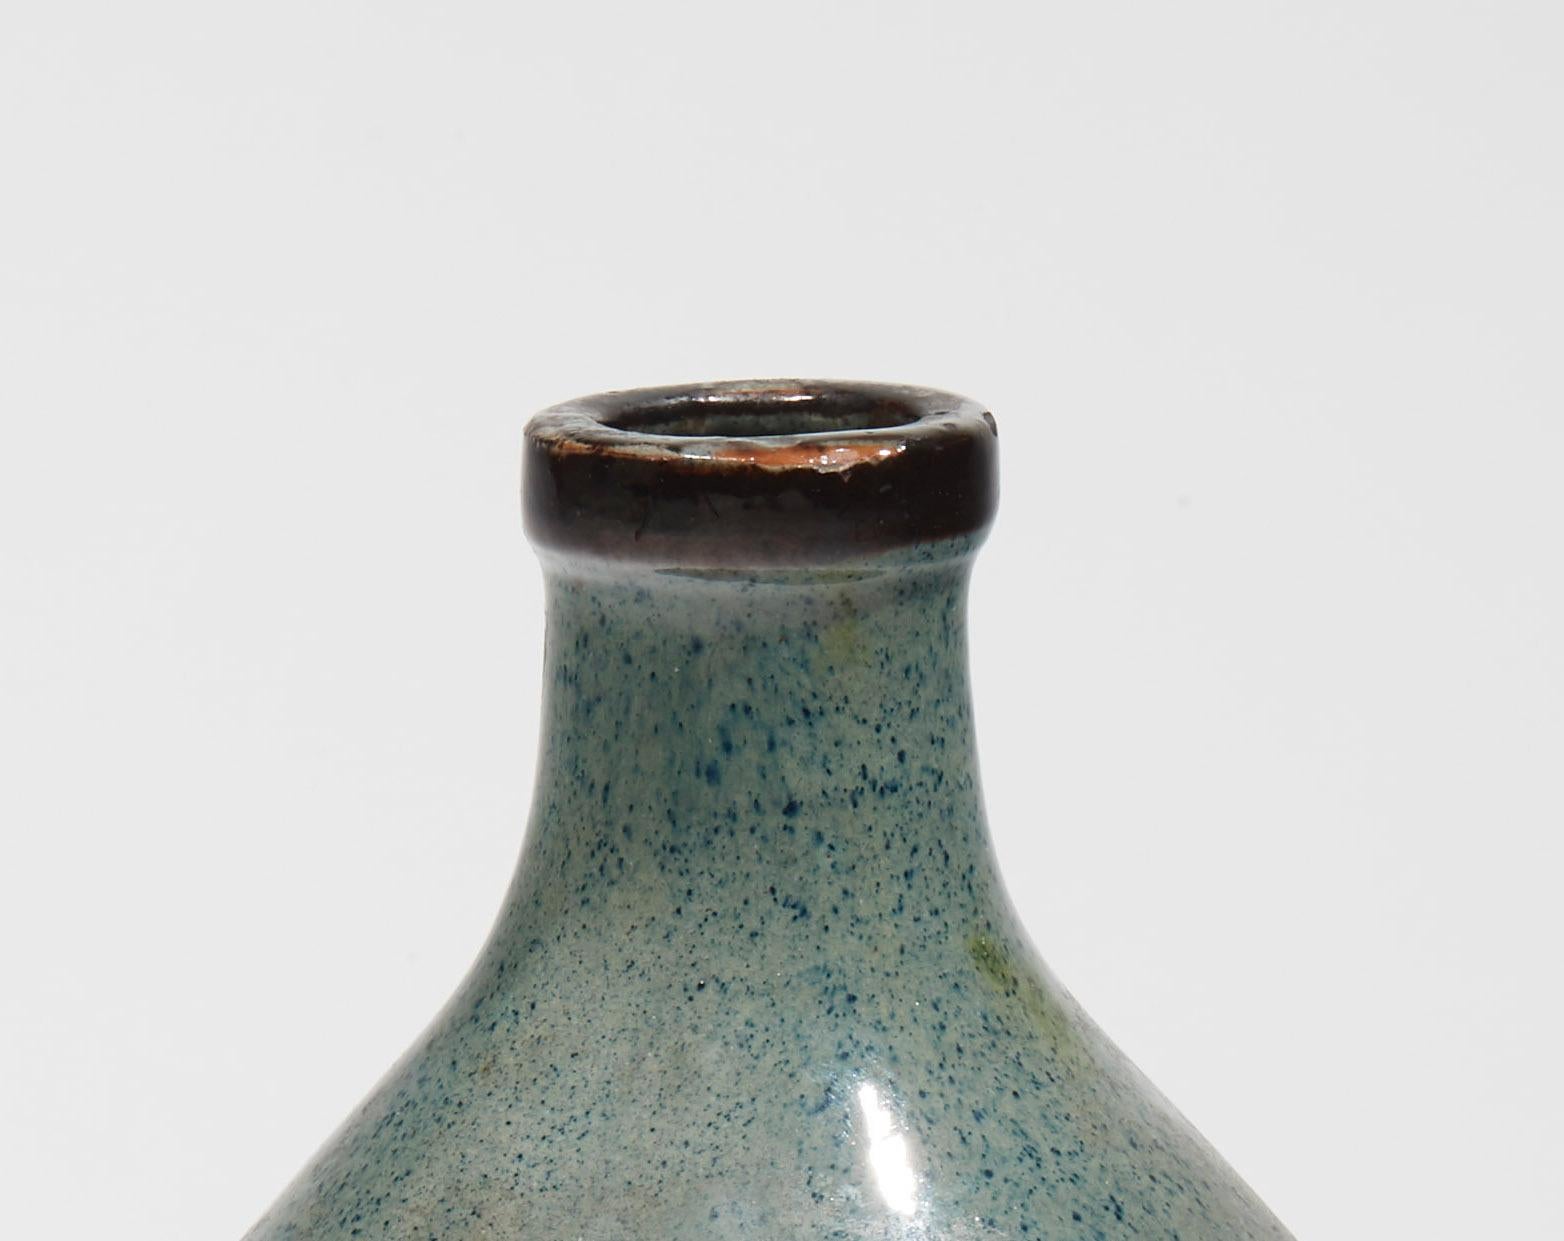 Vase ovoïde en faïence à col annulaire légèrement saillant, décor moderniste en émail de lignes noires et bleues interrompues par des carrés bleus sur la panse, fond bleu granité. Signé 